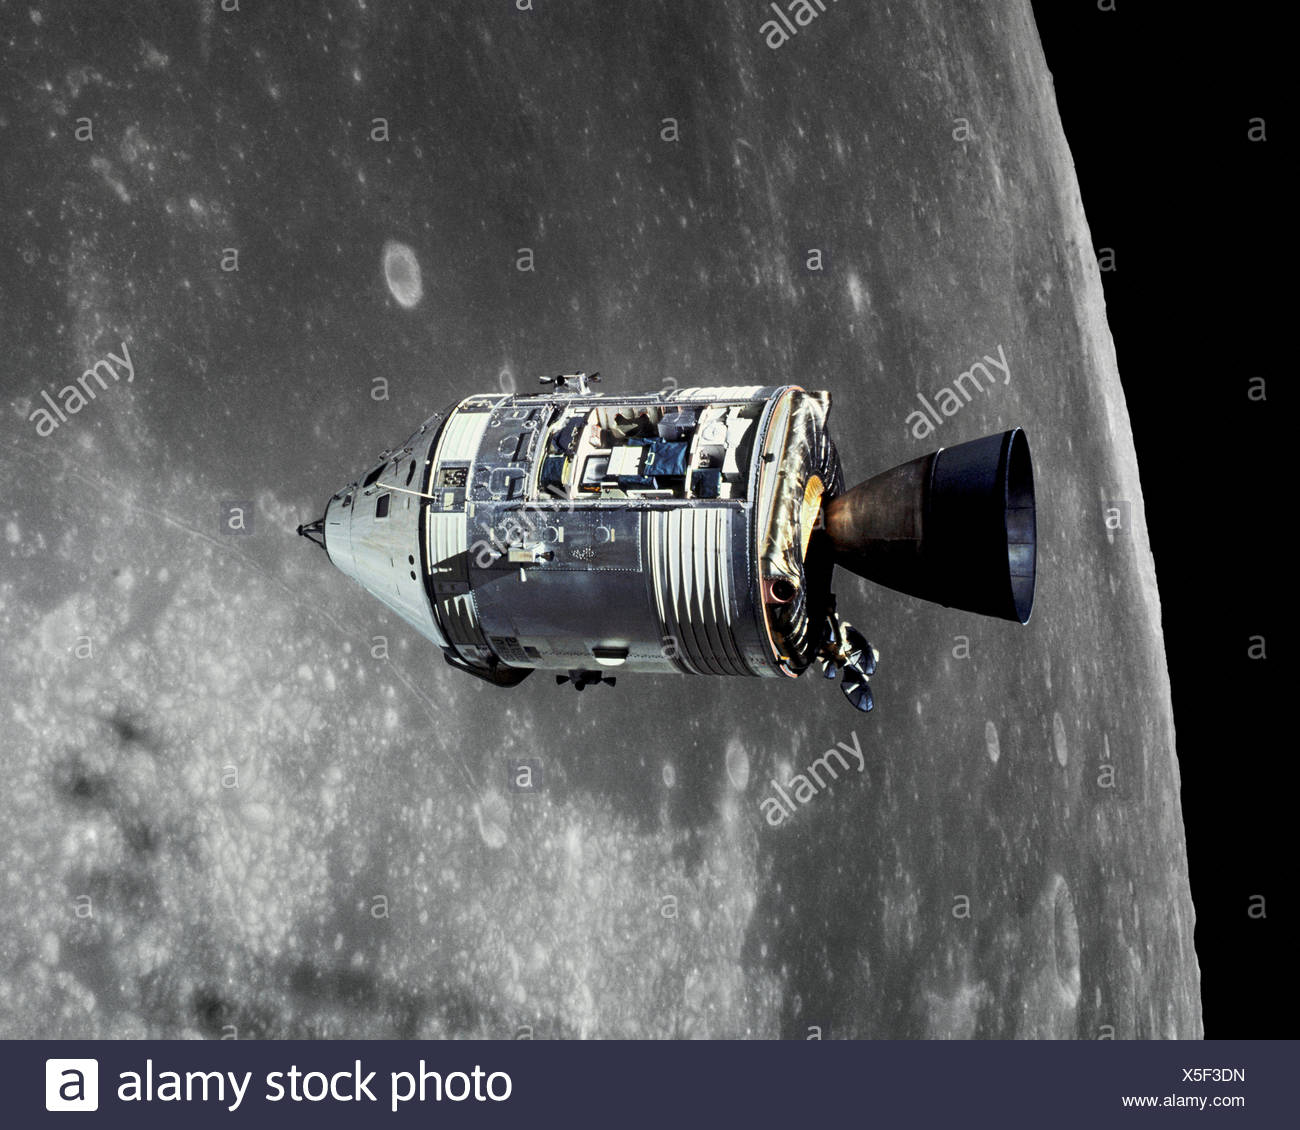  Module de commande Apollo 15  Endeavour en orbite autour de  